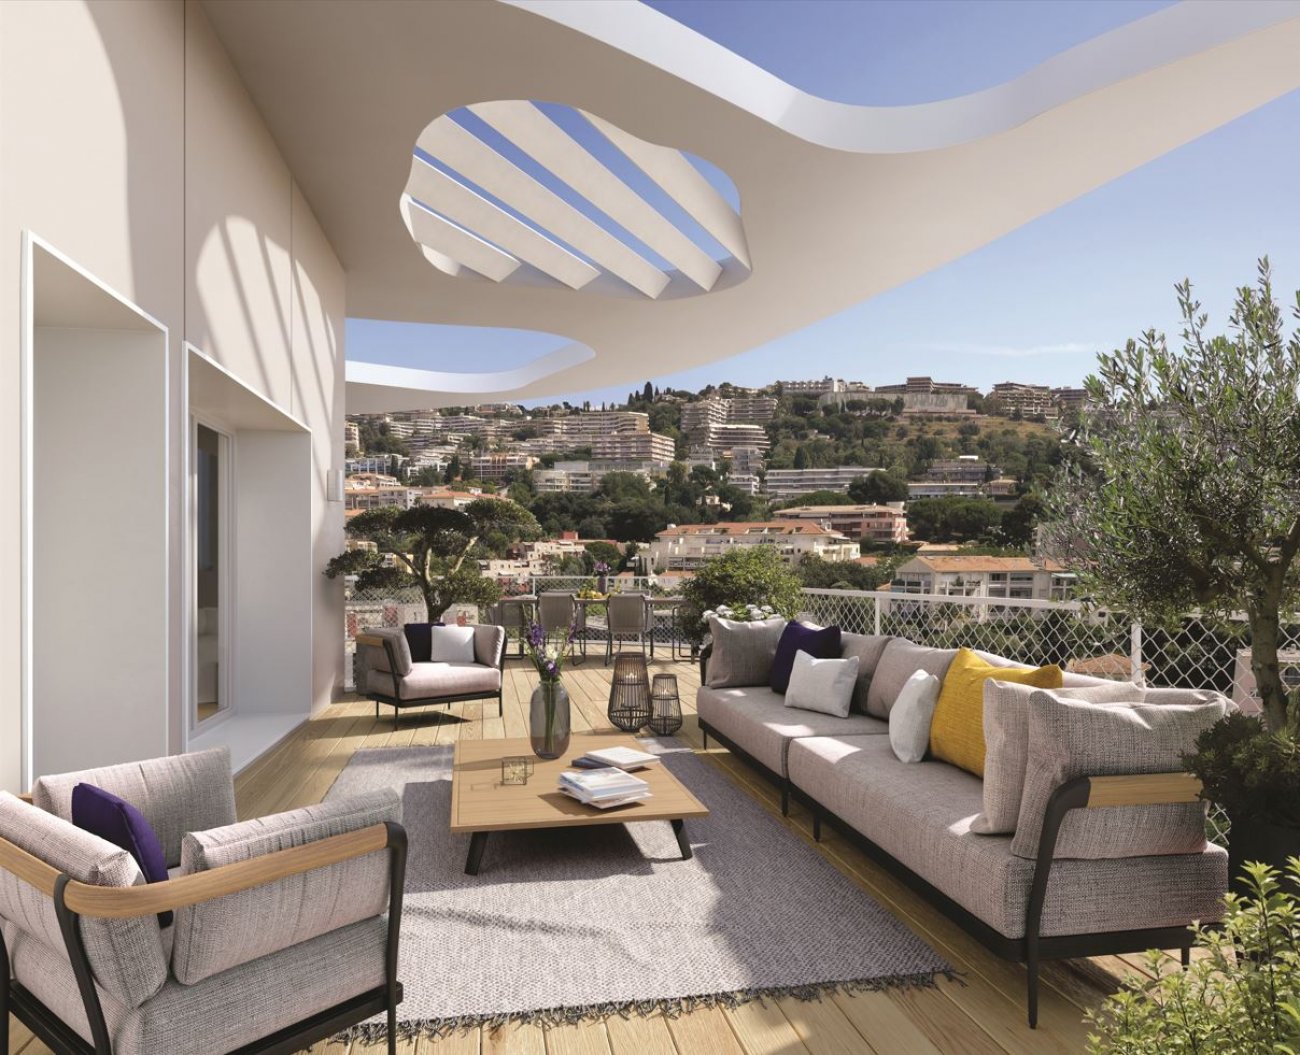 Livraison au premier trimestre 2025 pour les appartements neufs de la résidence Hana à Nice Méridia.